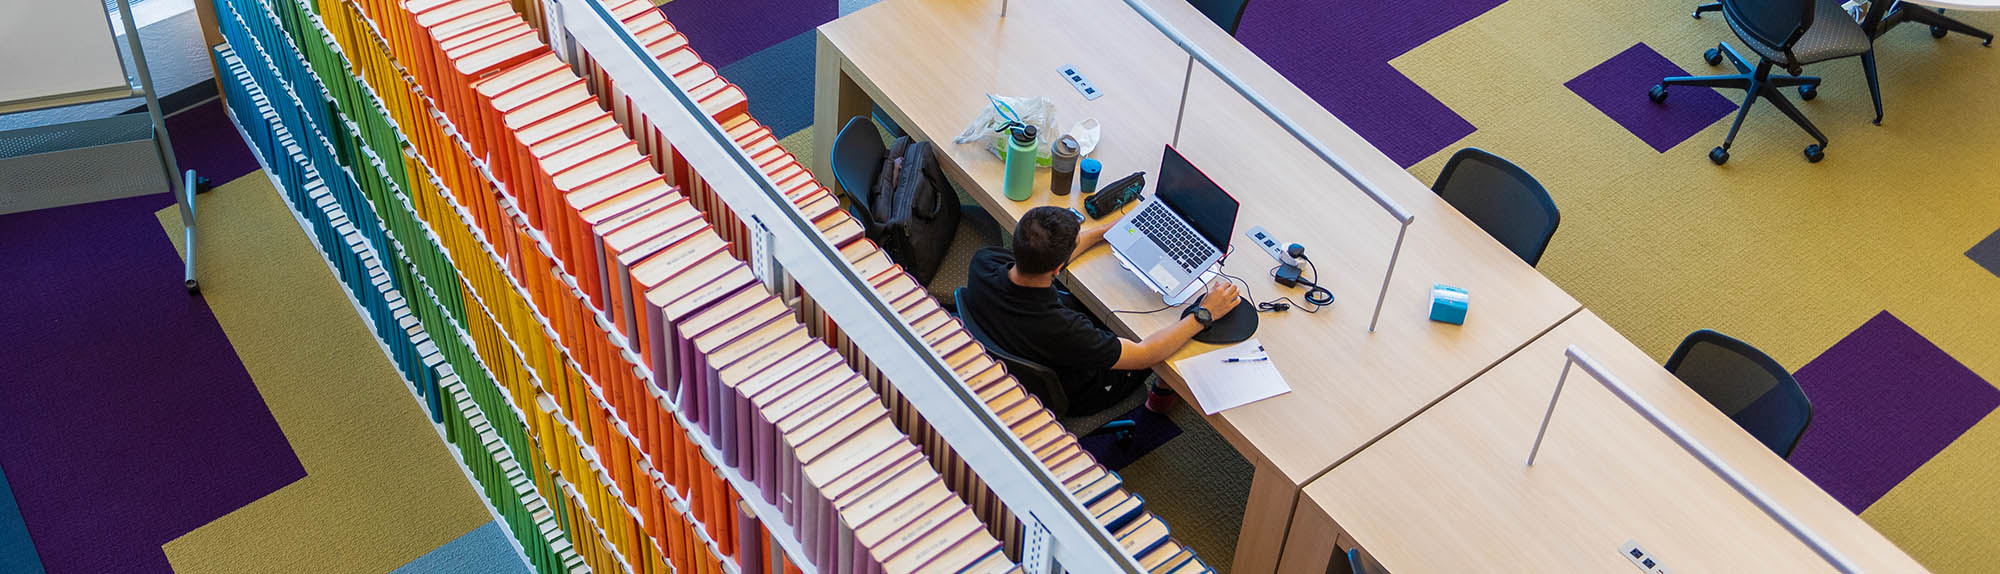 Uma visão panorâmica de uma pessoa estudando na Biblioteca HSC com uma variedade colorida de livros atrás dele